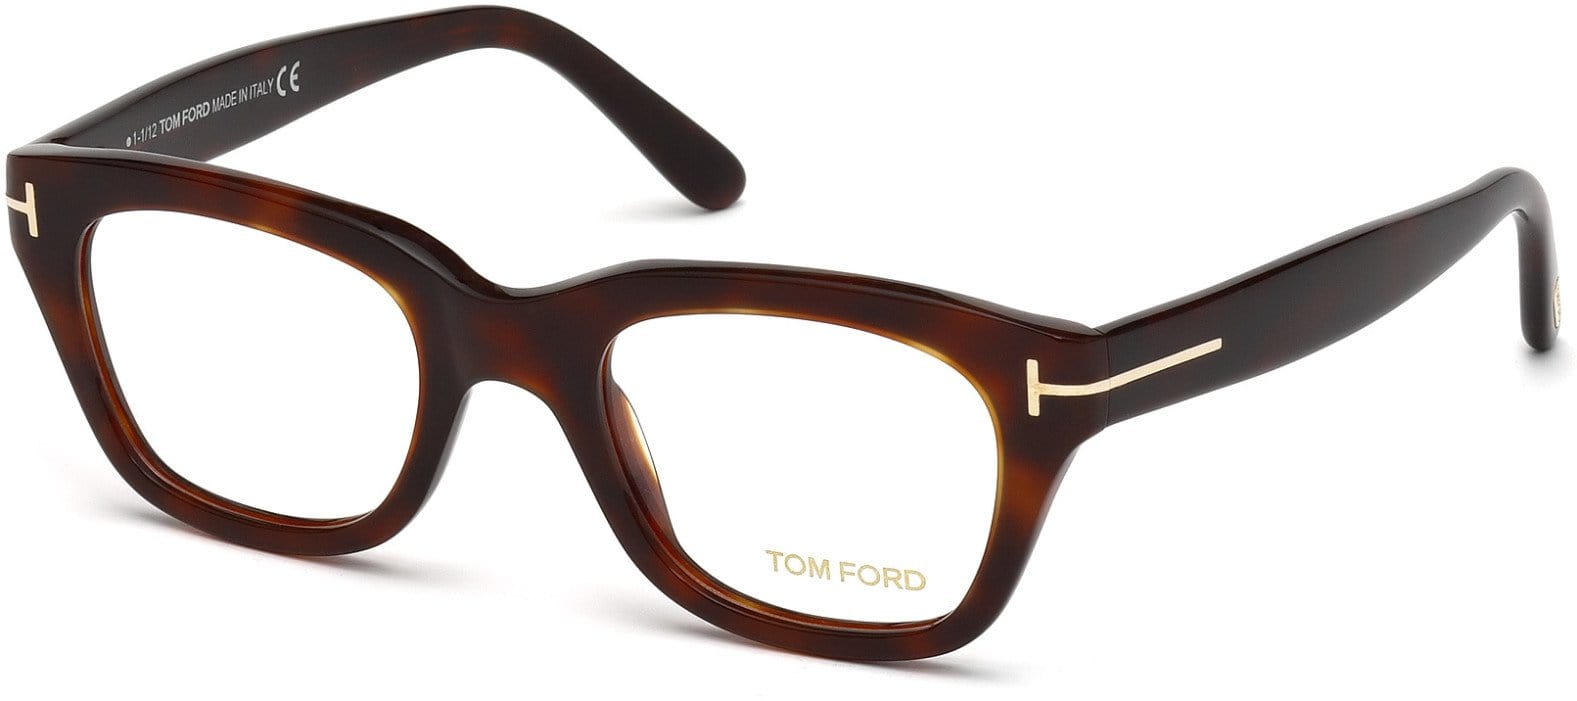 Tom Ford FT5178 Geometric Eyeglasses 052-052 - Dark Havana